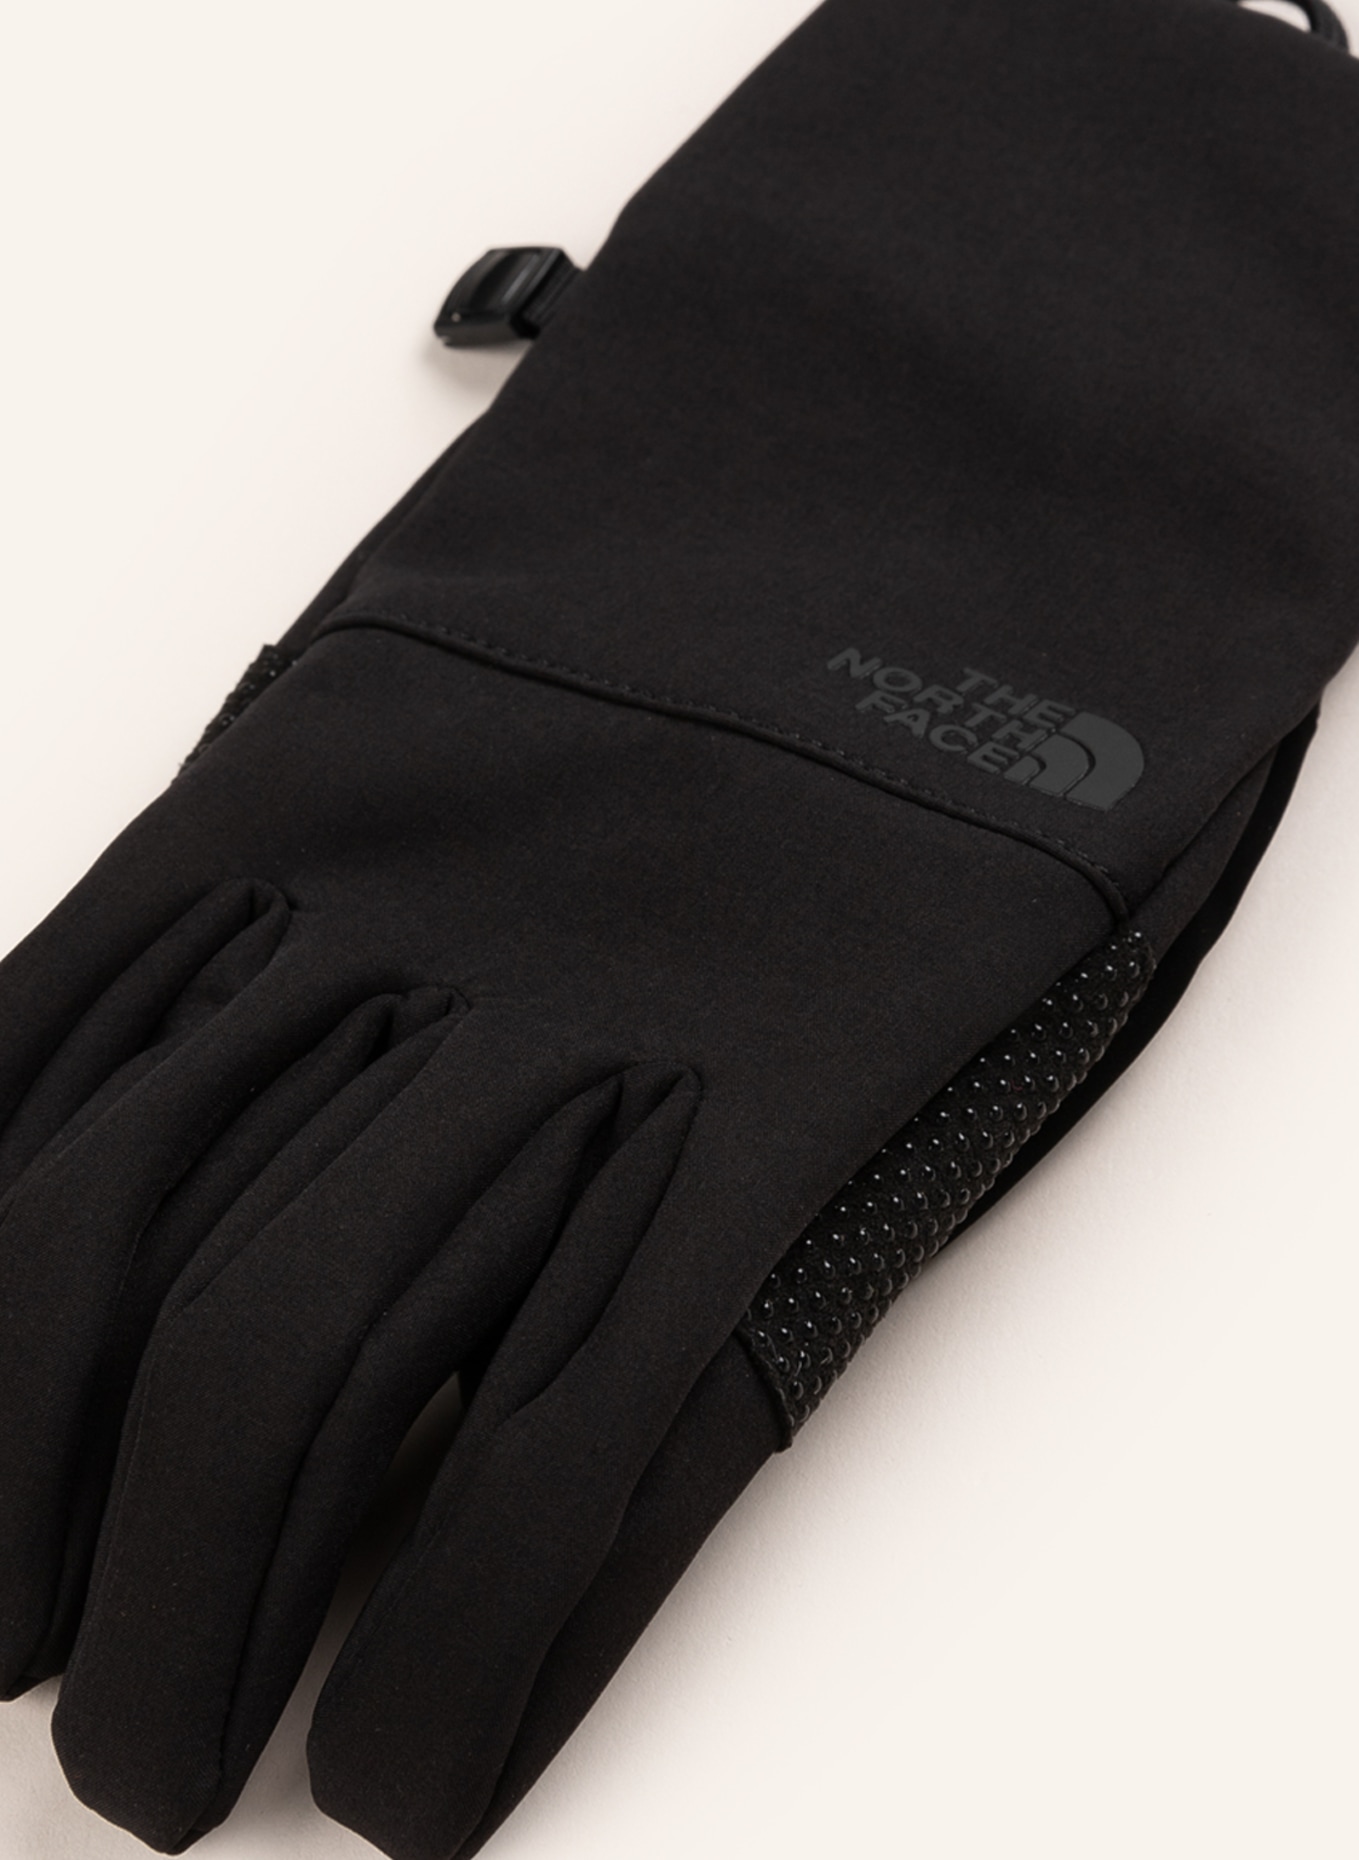 THE NORTH FACE Multisport-Handschuhe APEX in ETIP schwarz Touchscreen-Funktion mit